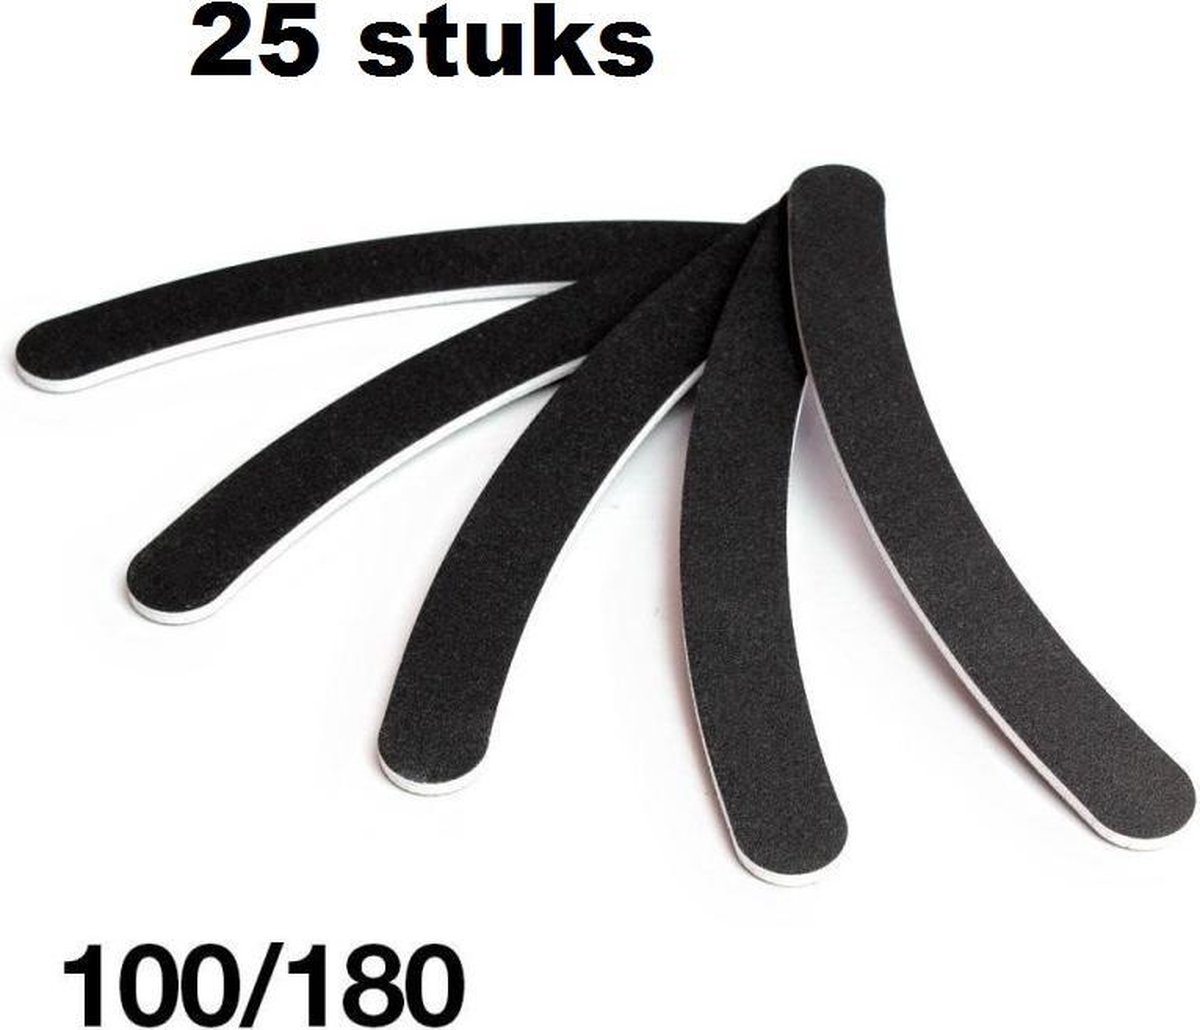 25 x 100/180 Boomerang vijlen zwart, Nagelvijl zwart, Nagelvijlen krom